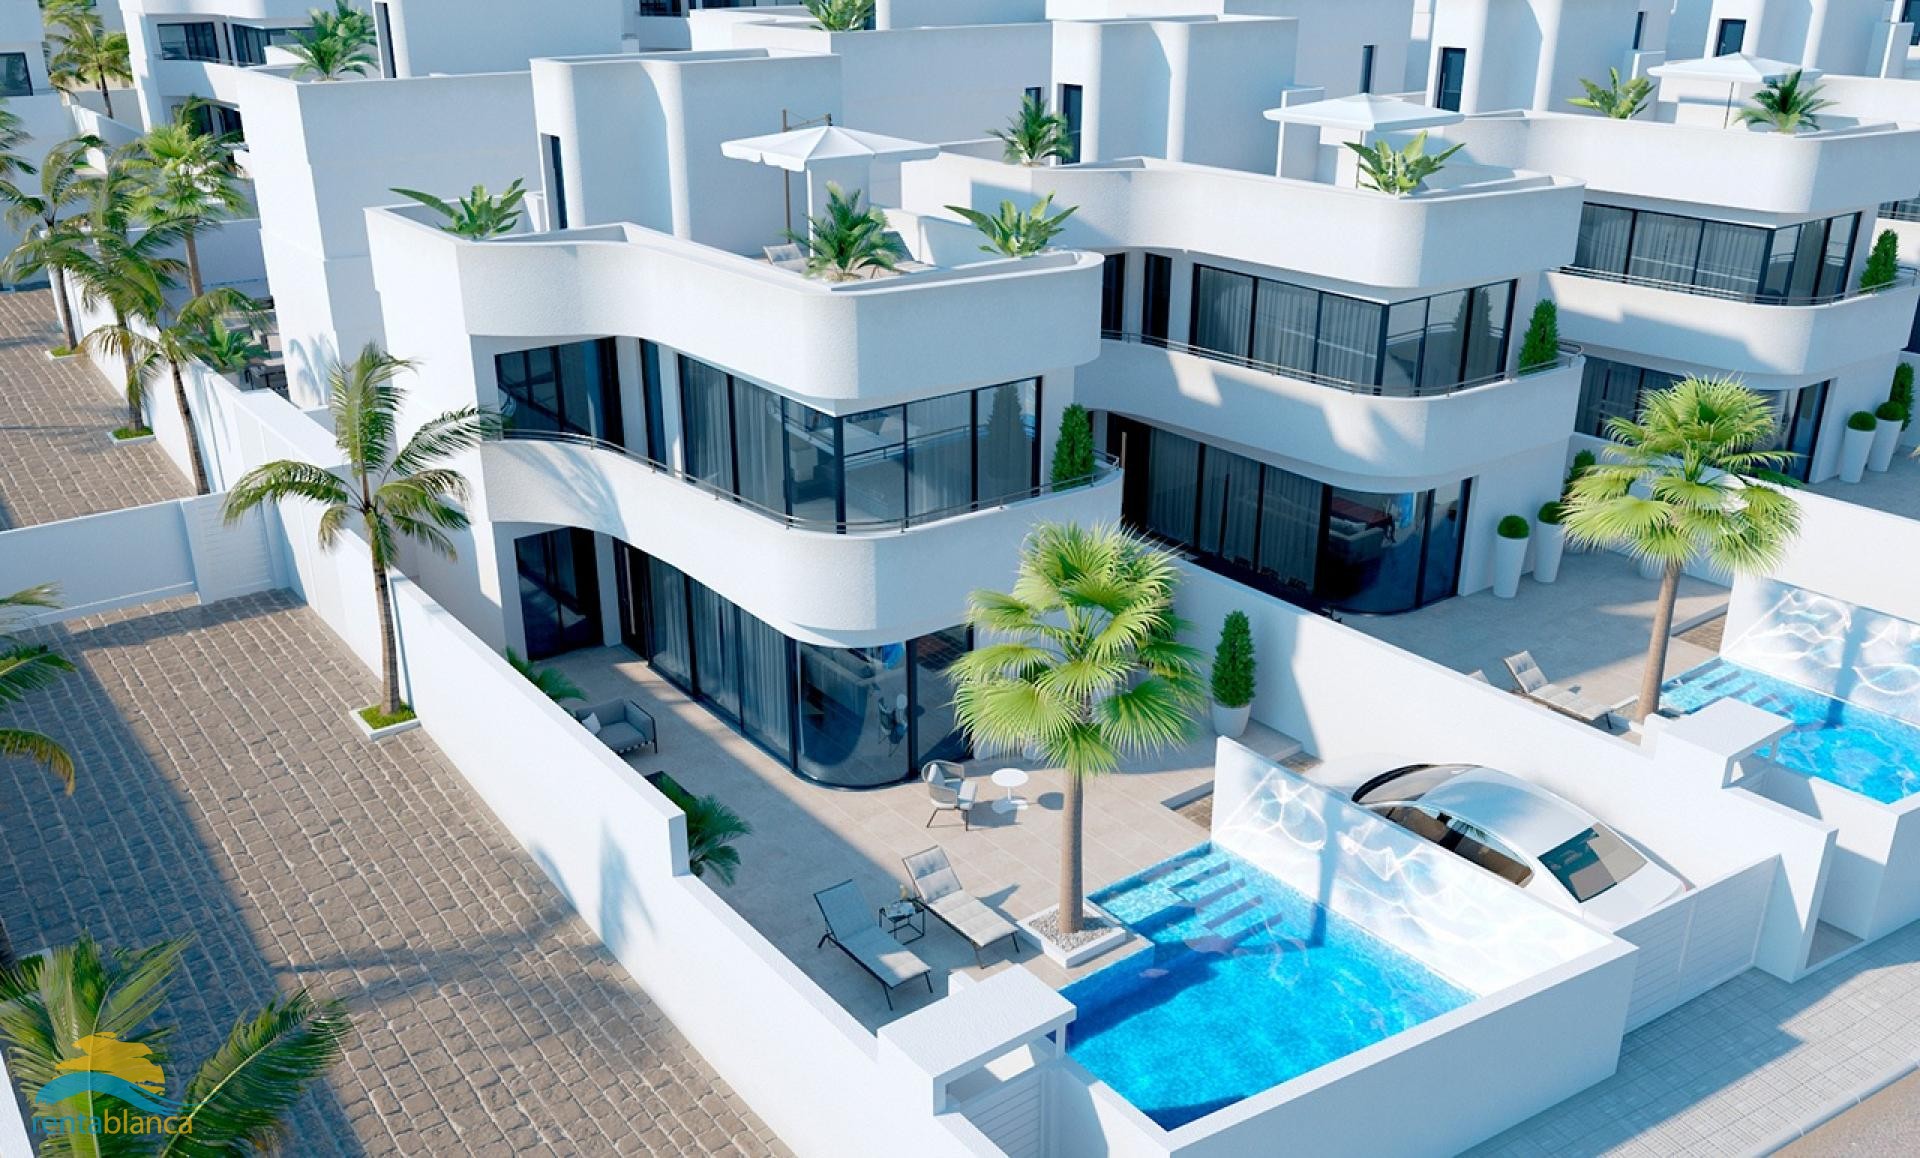 New build - modern detached villa - La Marina Urb. - Rentablanca